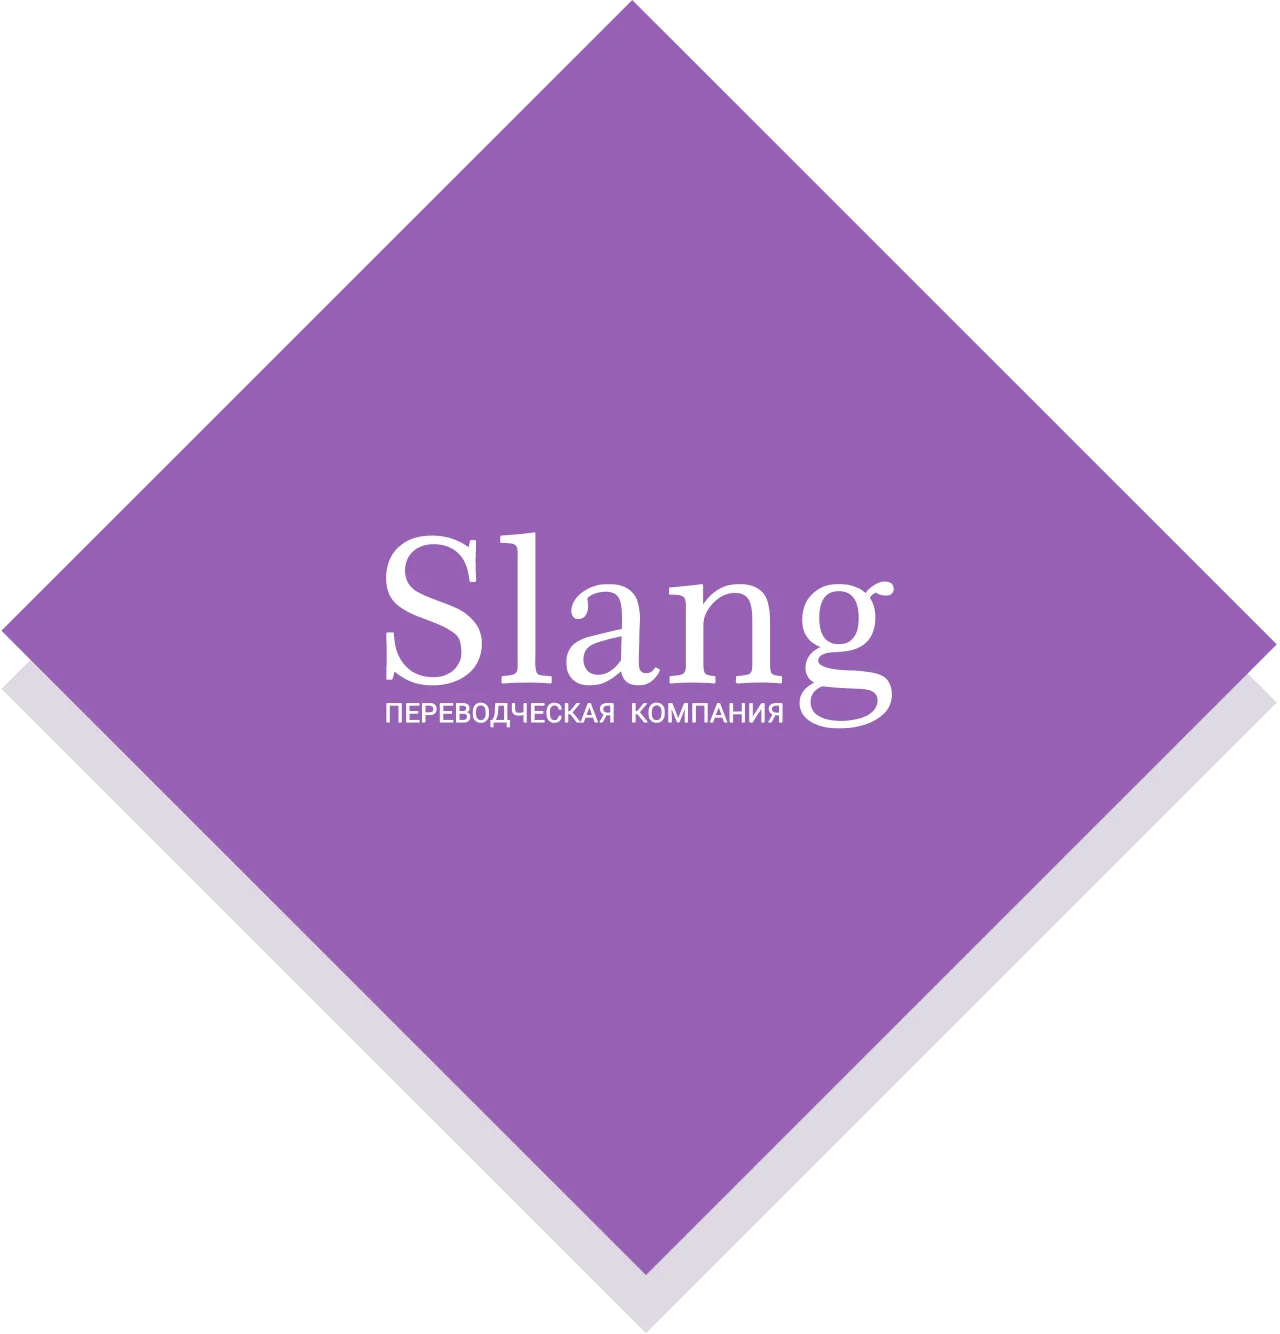 Переводческая компания Slang